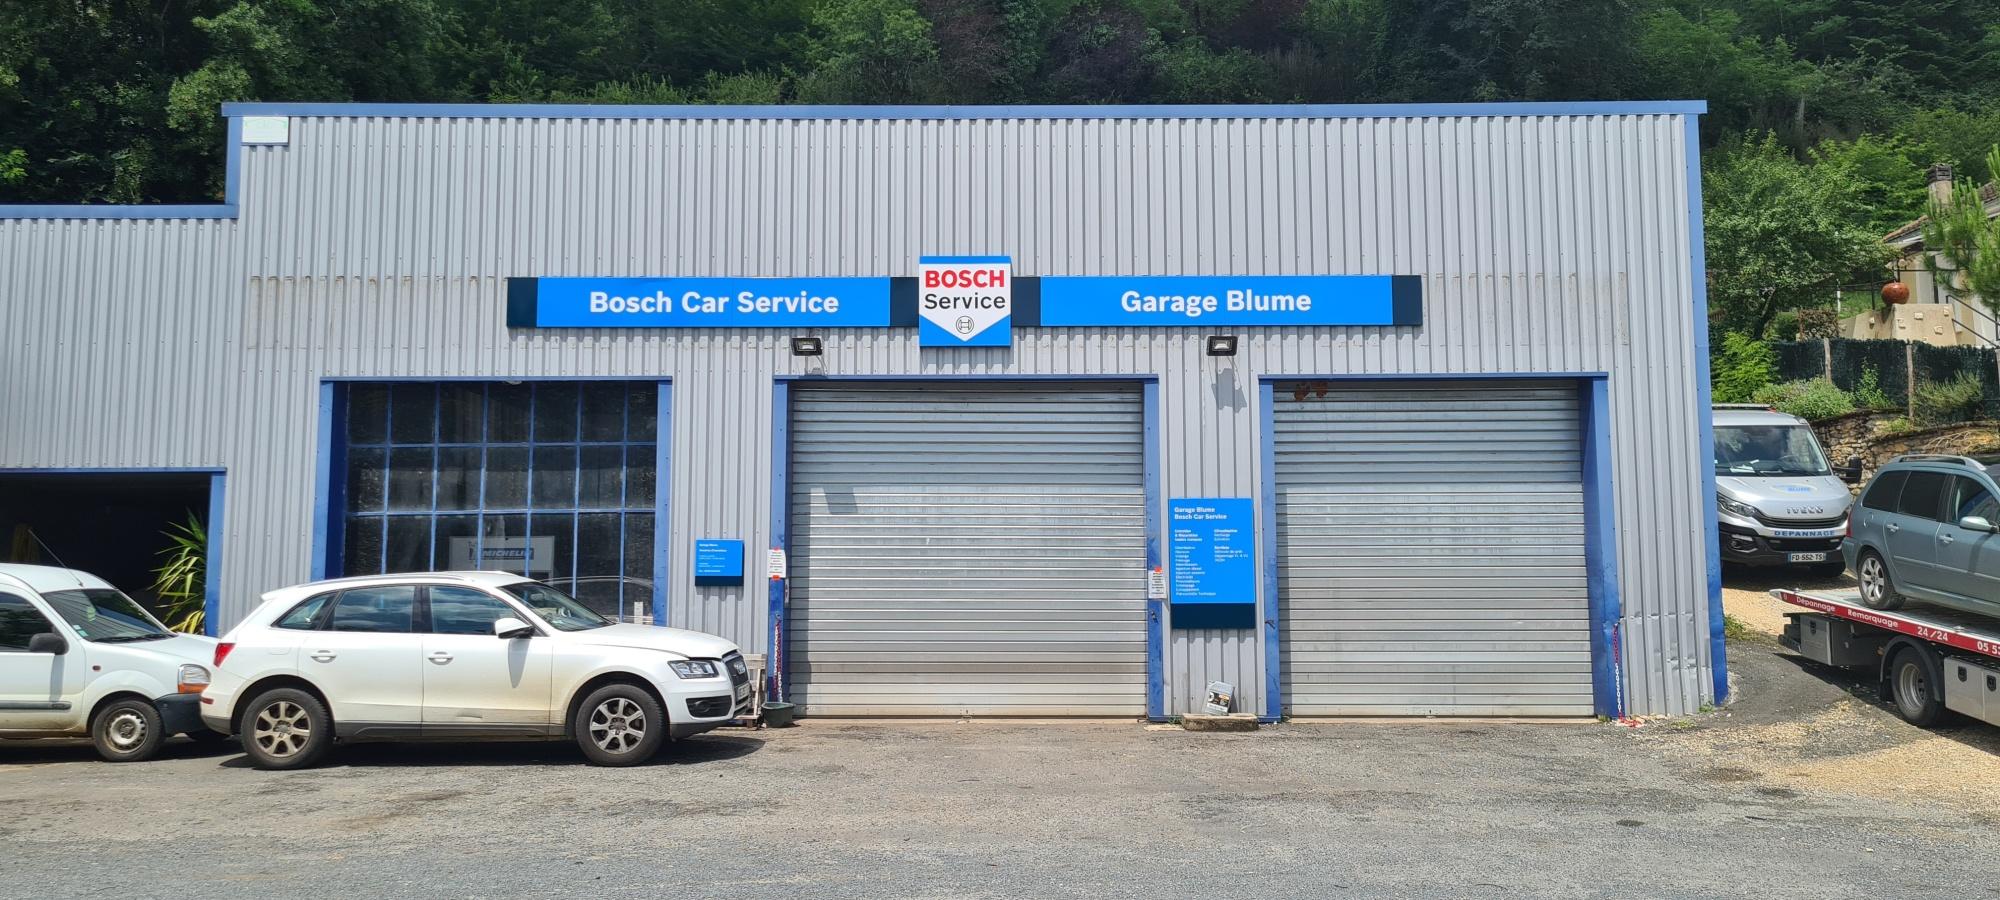 Garage Blume Jean-christophe : Réparations/dépannage 24/24 - Bosch Car Service Montignac